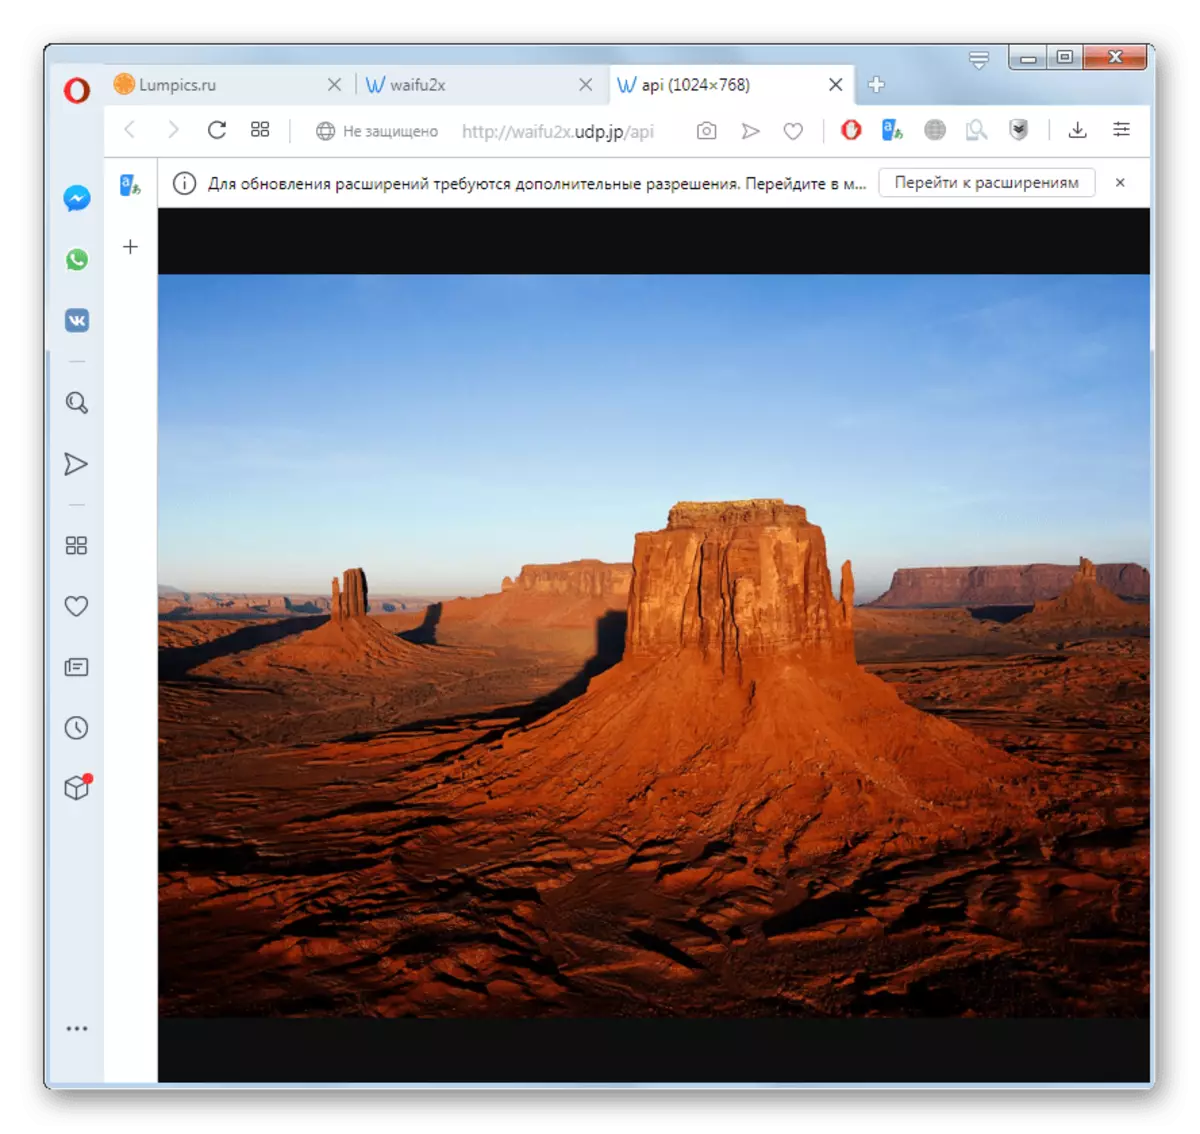 Imaginea transformată a fost deschisă pe serviciul WAIFU2X în fila New Opera Browser